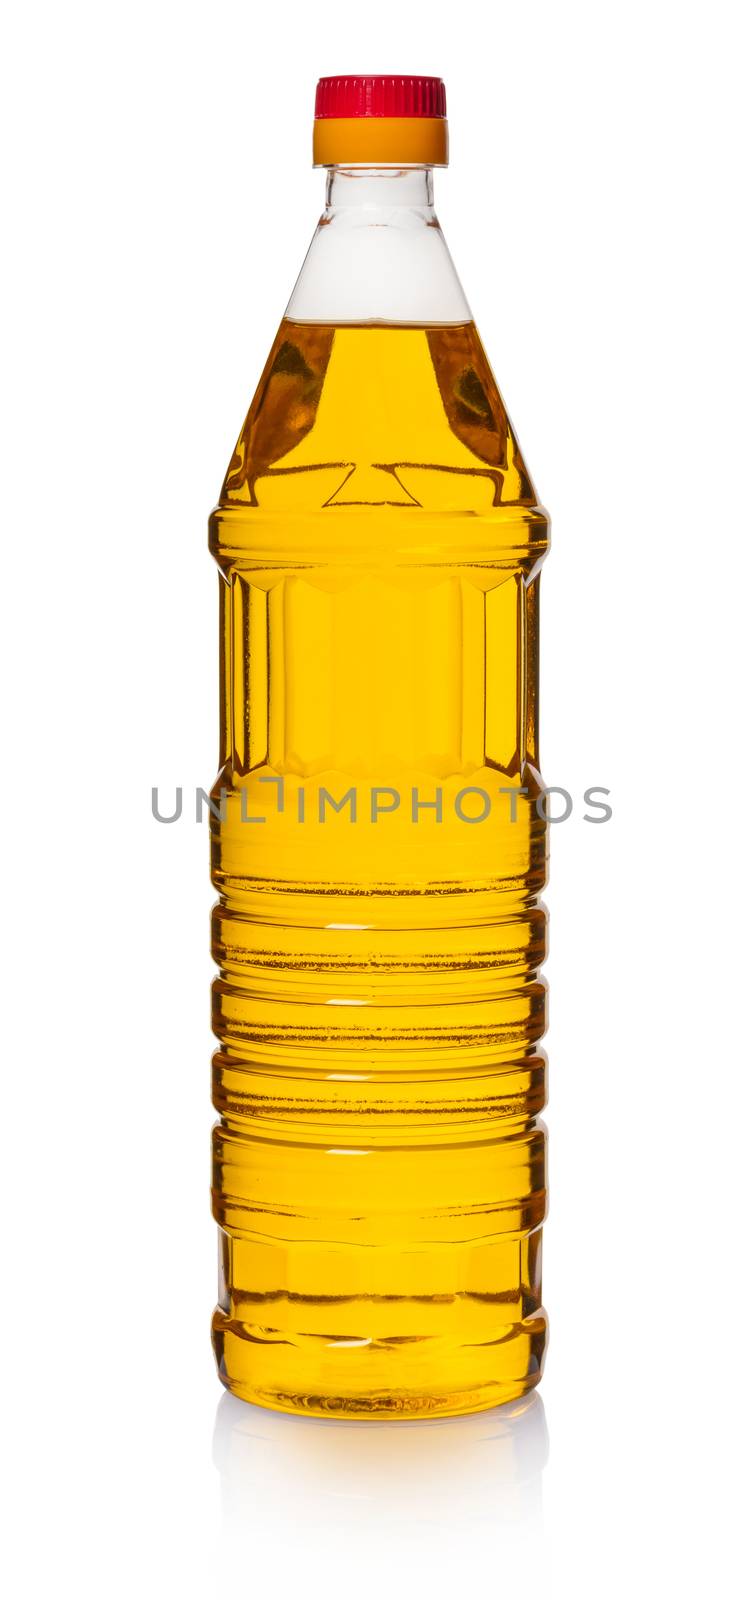 sunflower oil in bottle  by MegaArt